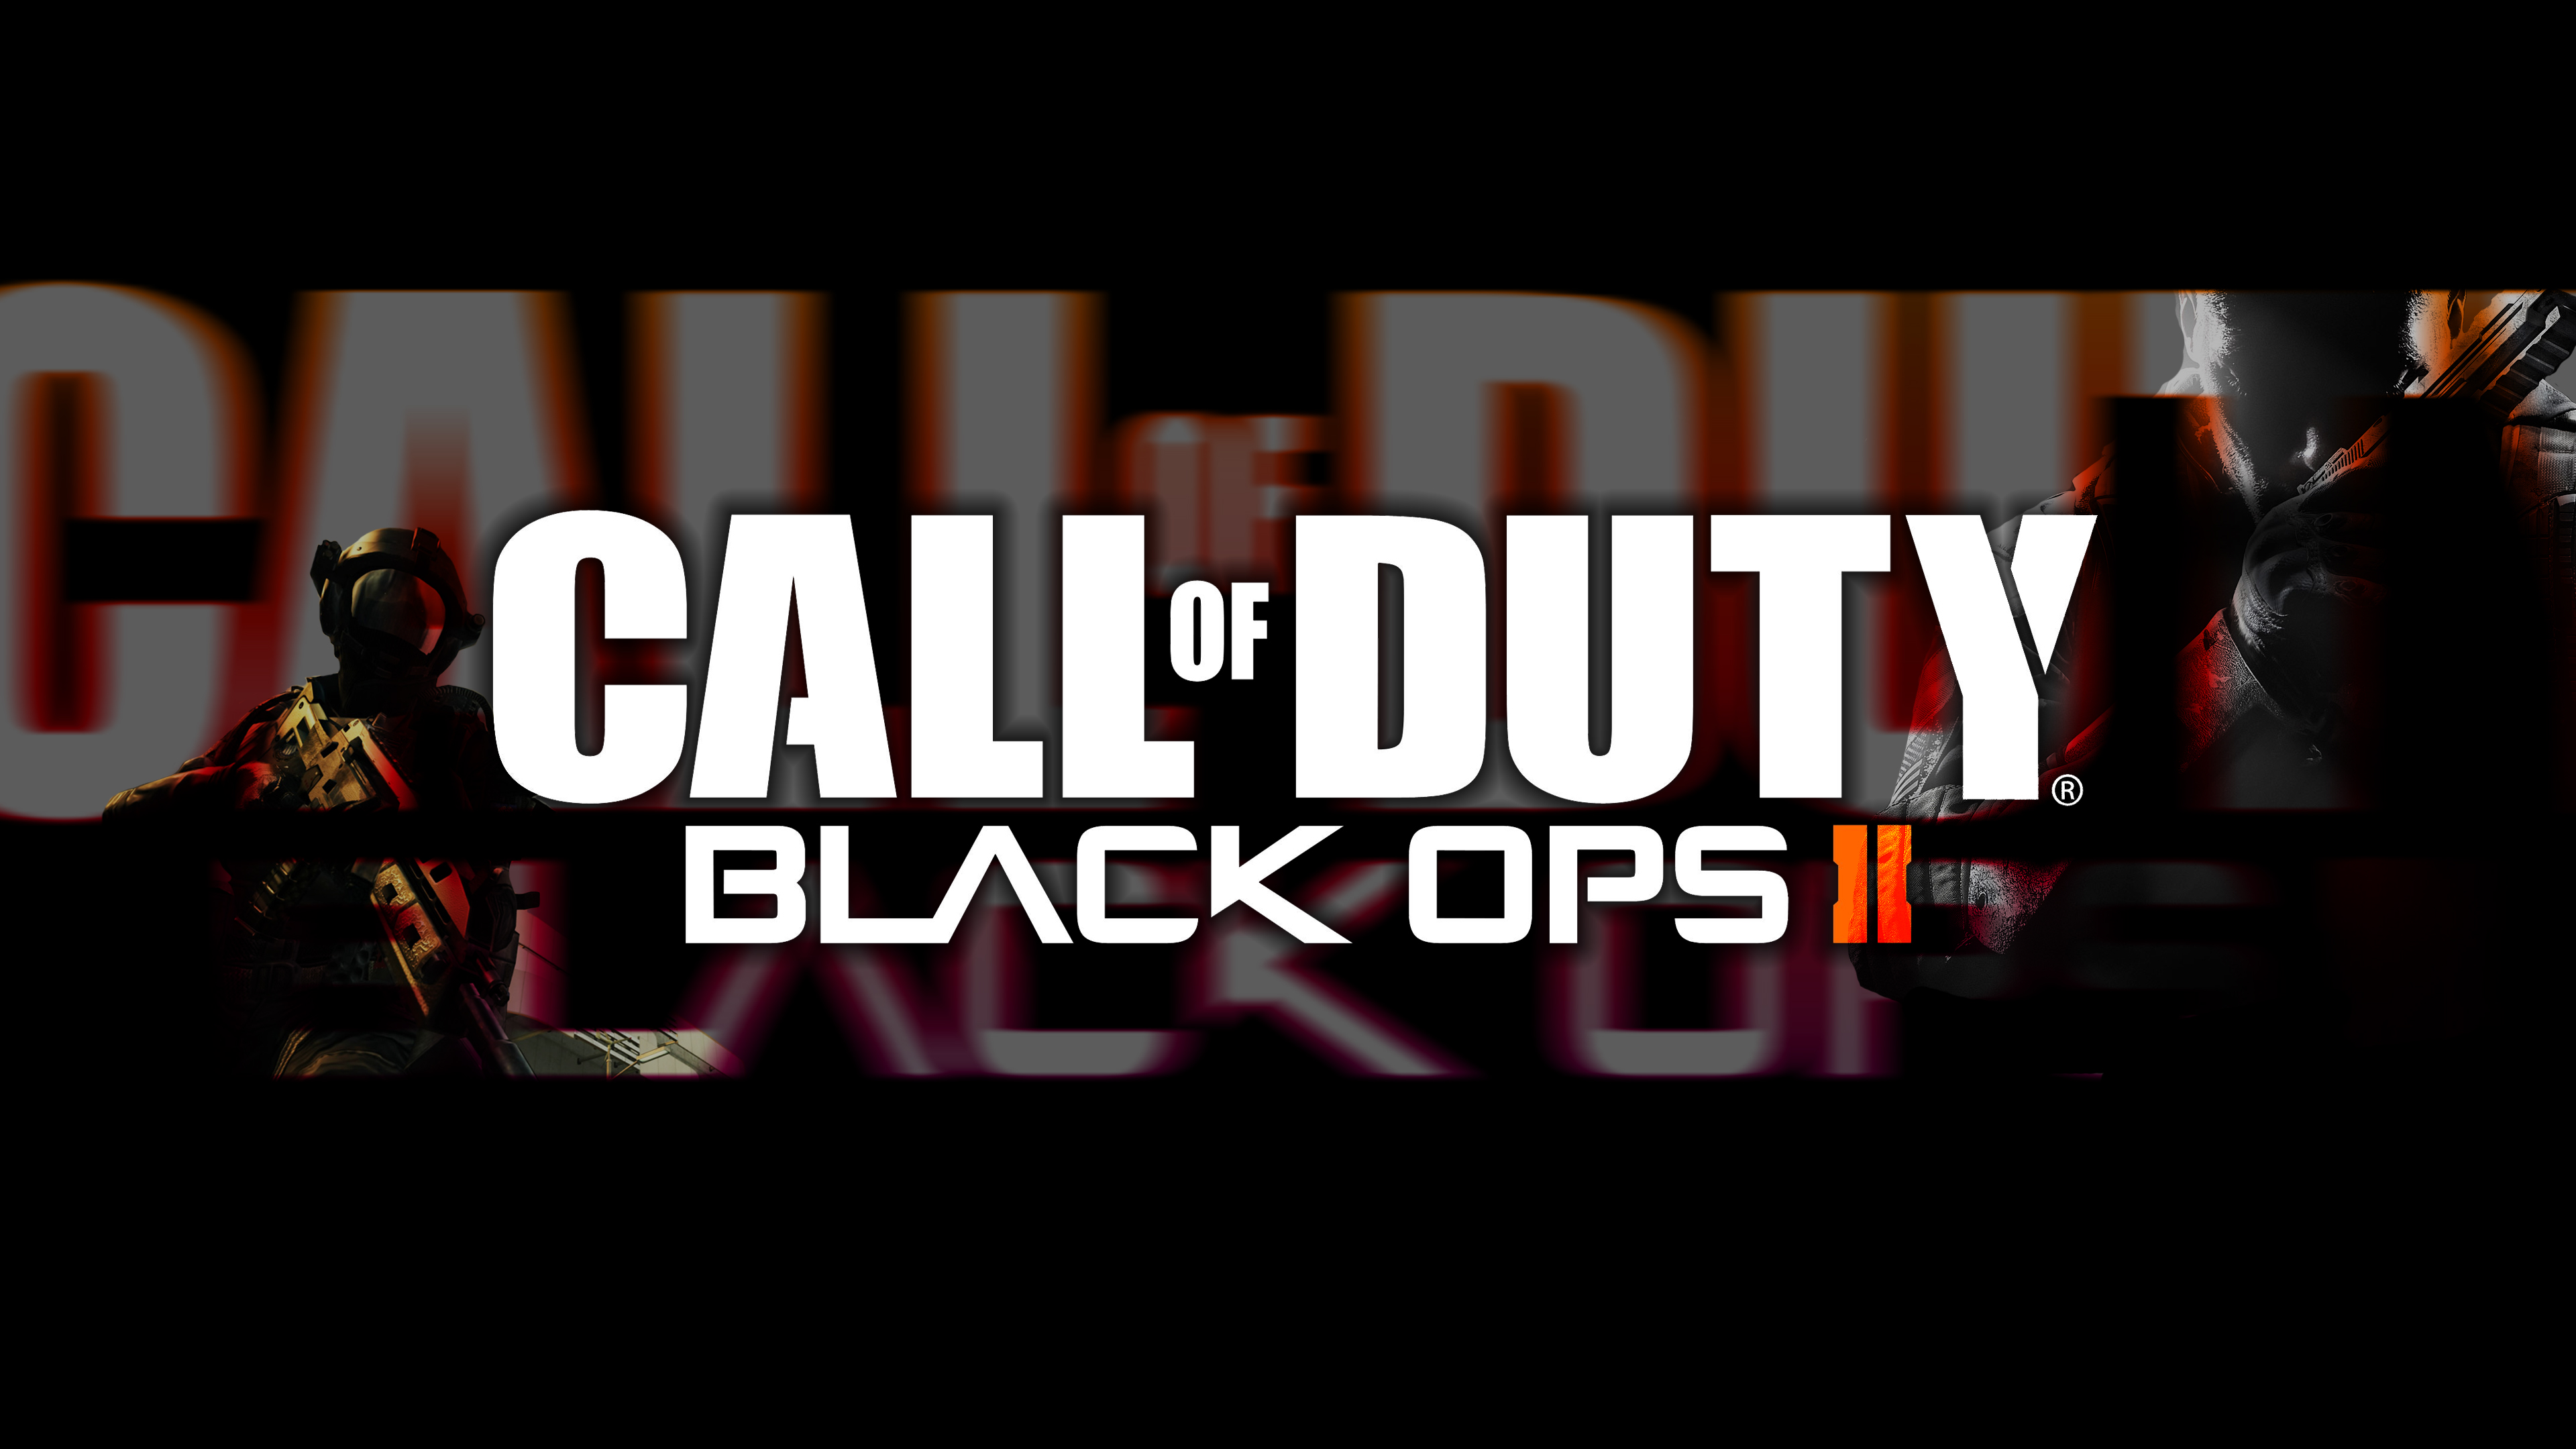 Call Of Duty Black Ops II Wallpaper [HD] by JBele on